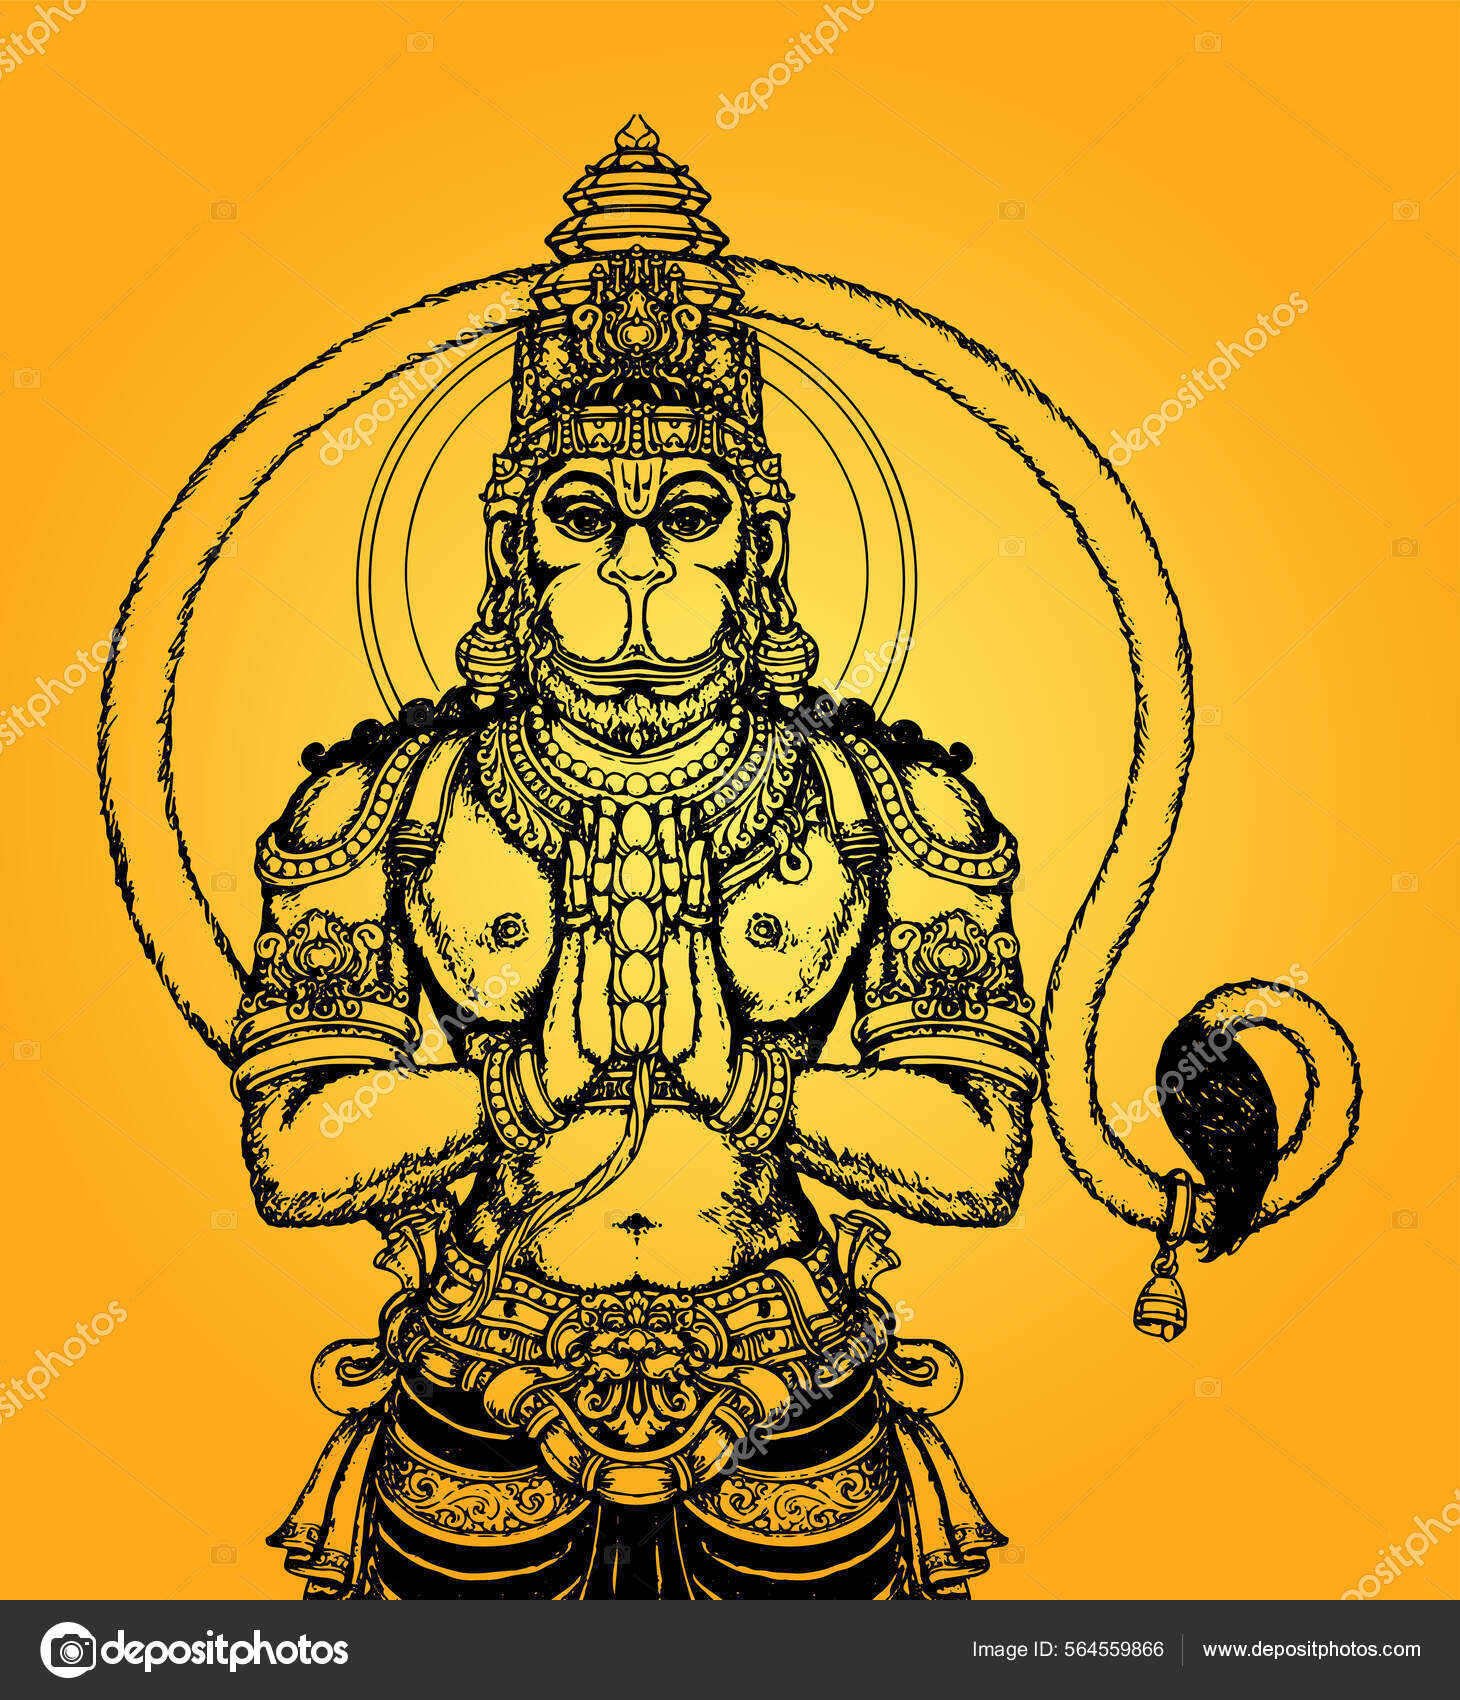 Hanuman jayanti Vector Art Stock Images | Depositphotos